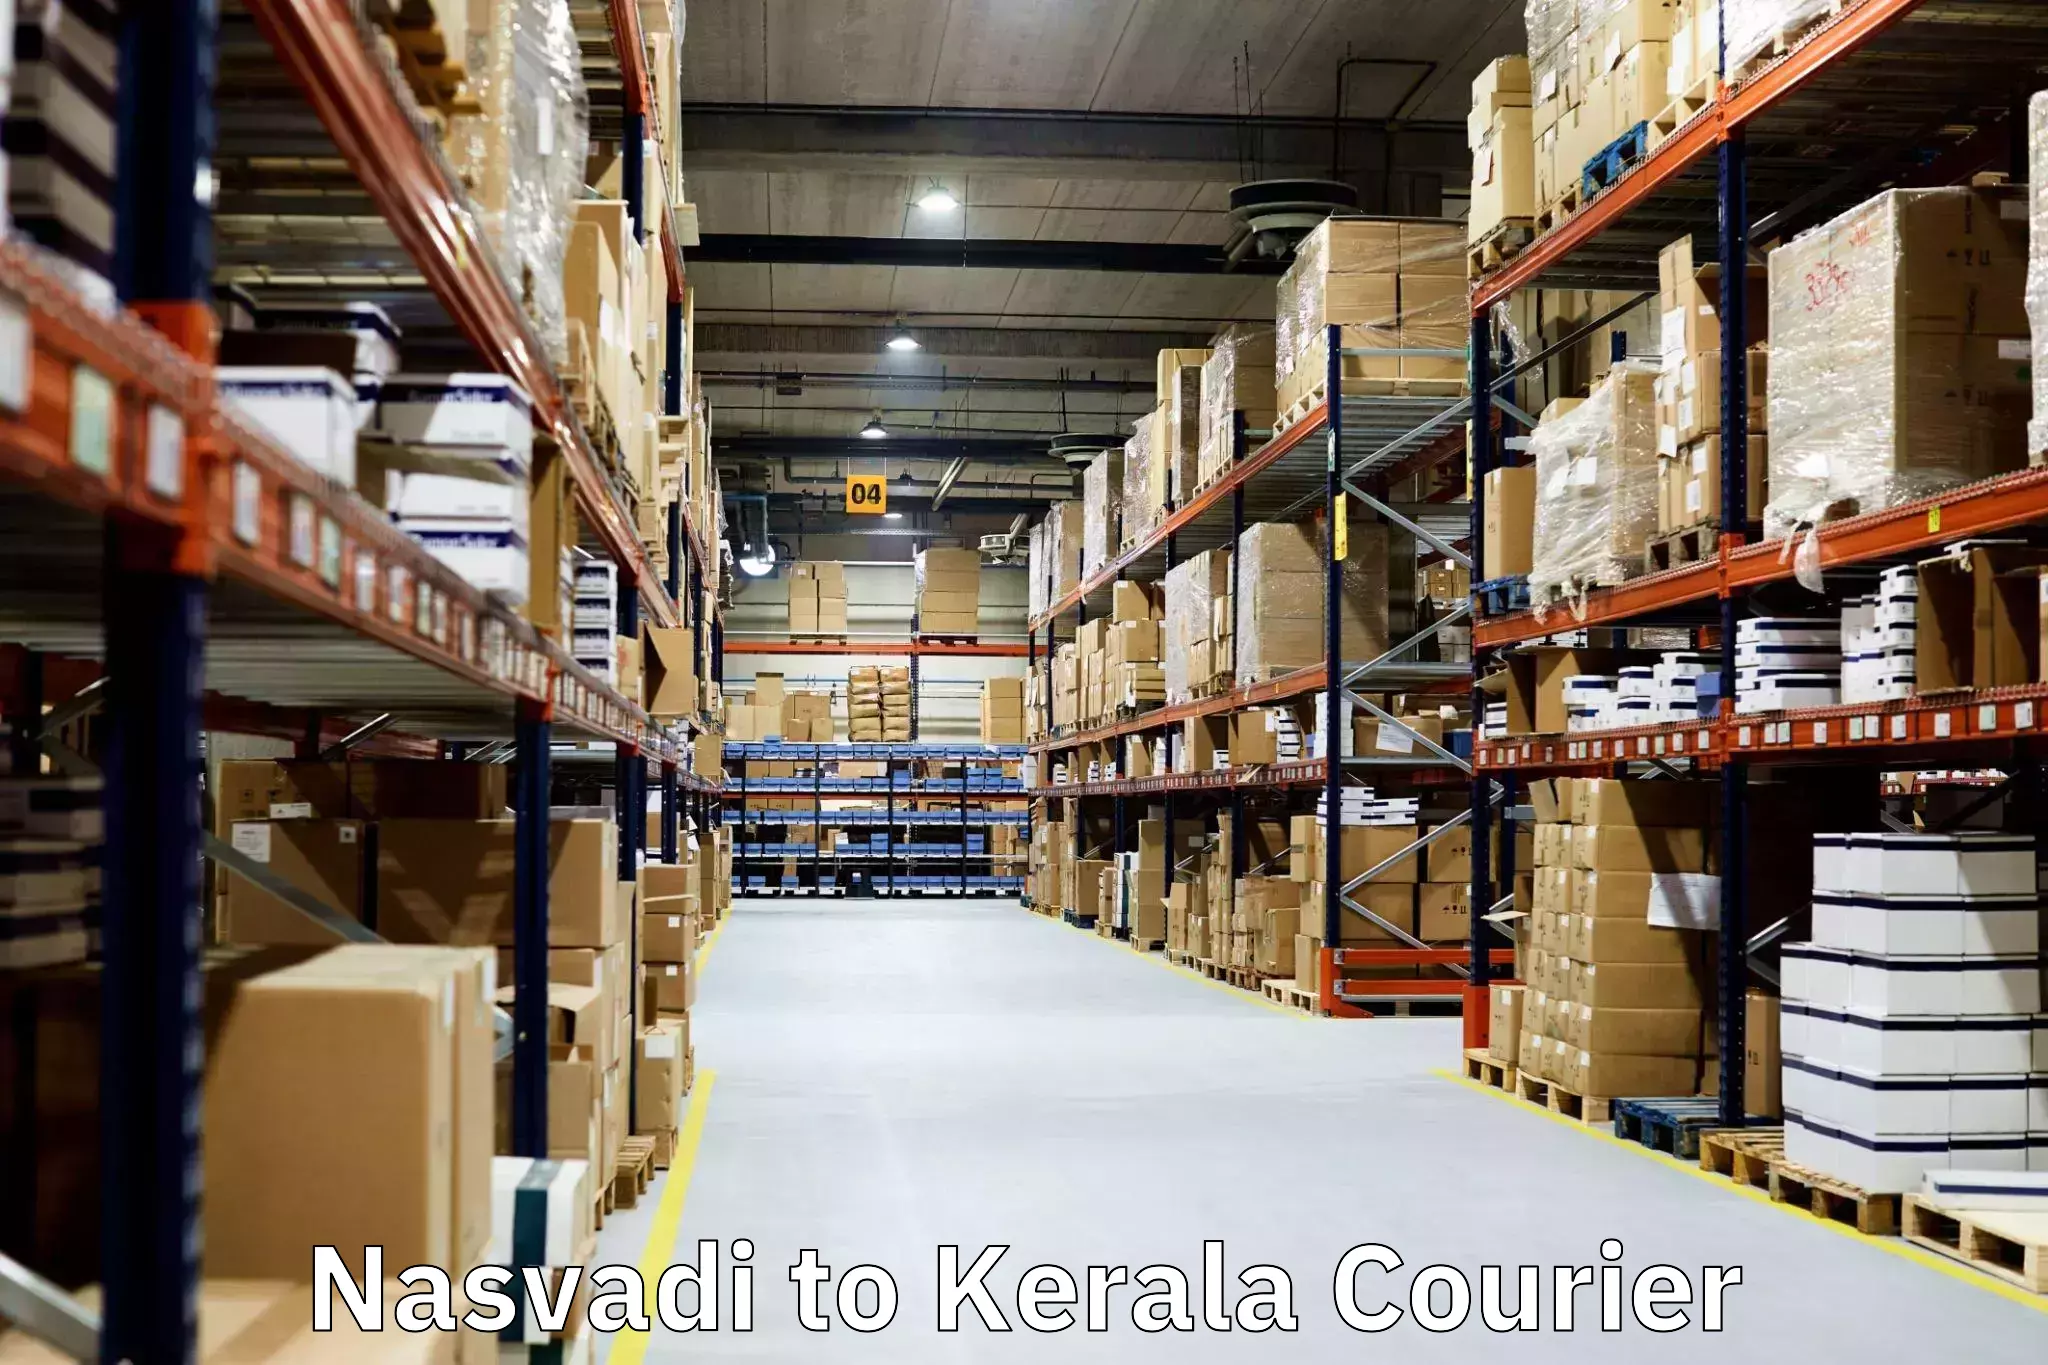 Professional goods transport Nasvadi to Guruvayur